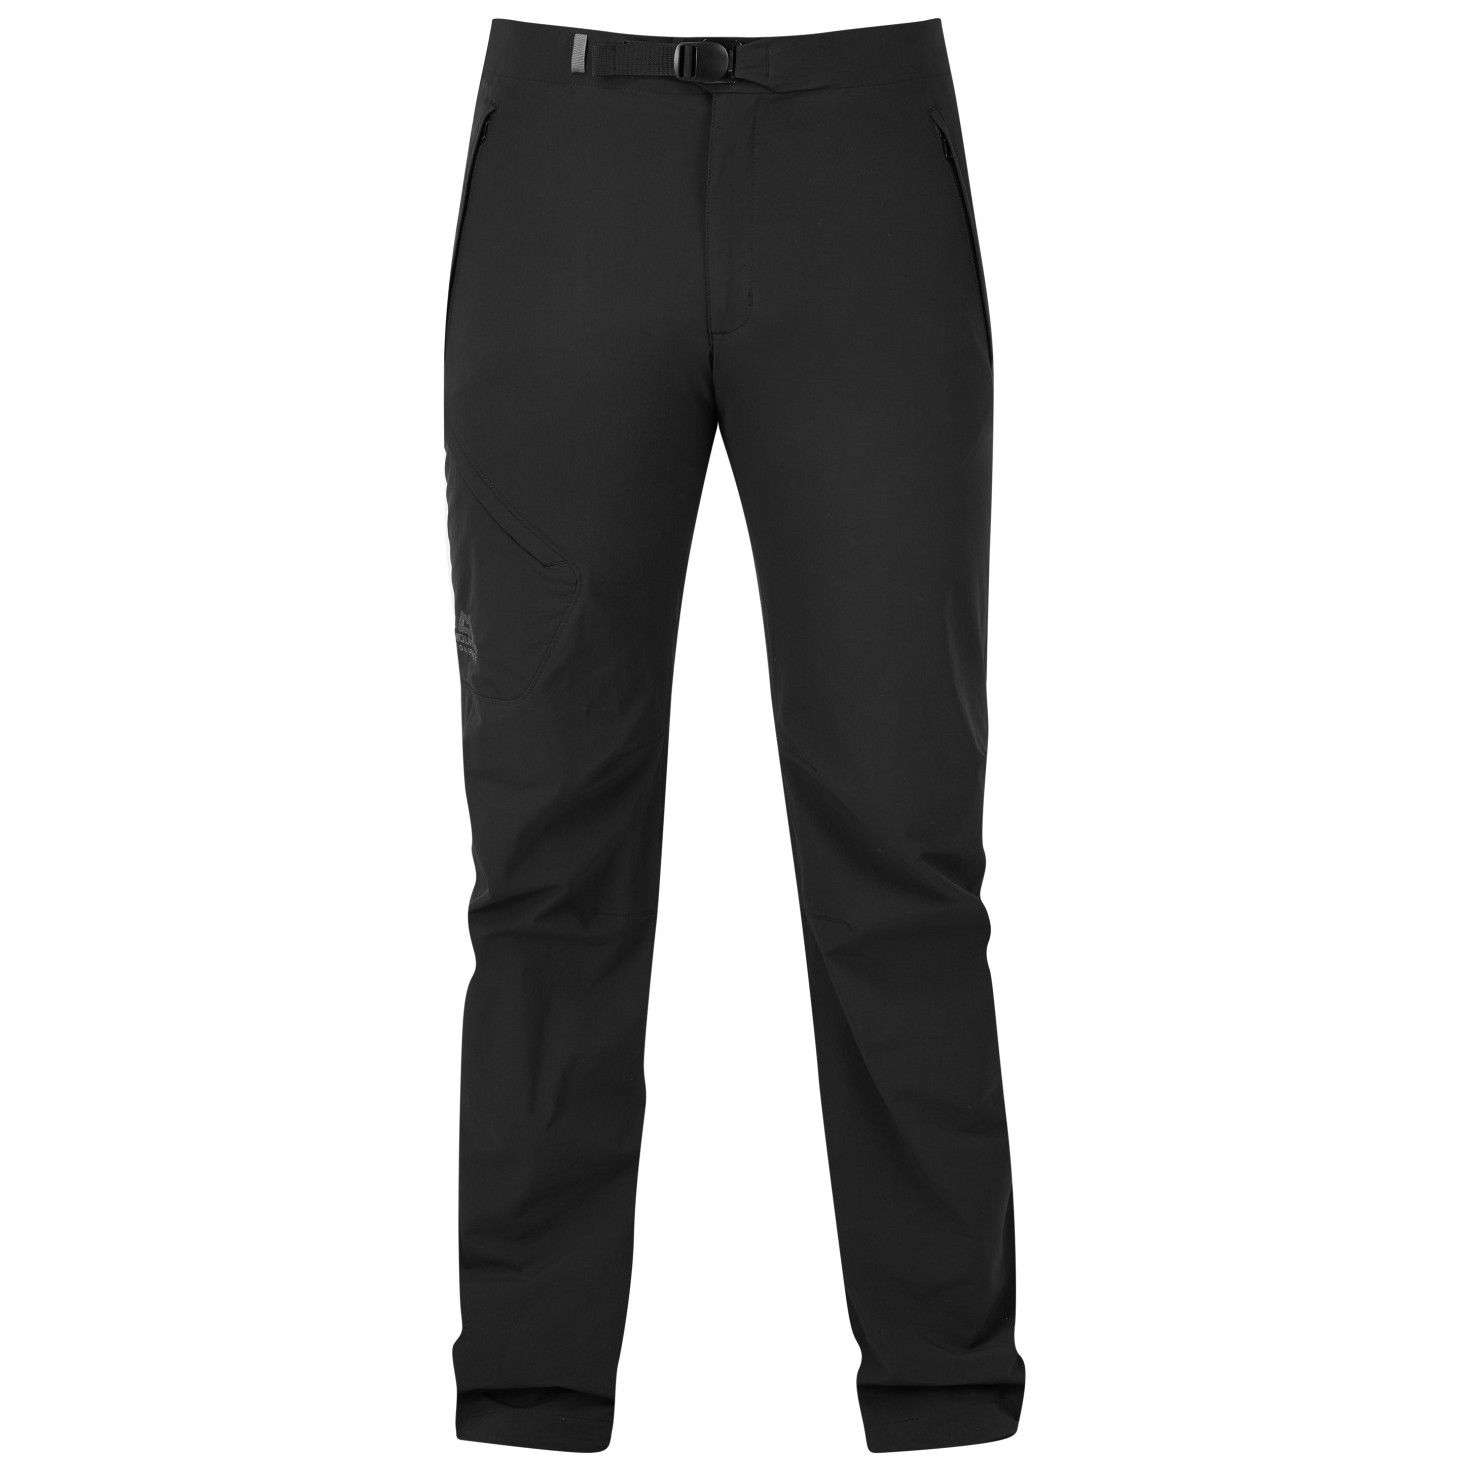 Pánské kalhoty Mountain Equipment Comici Pant Black/Black Velikost: L / Délka kalhot: regular / Barva: černá